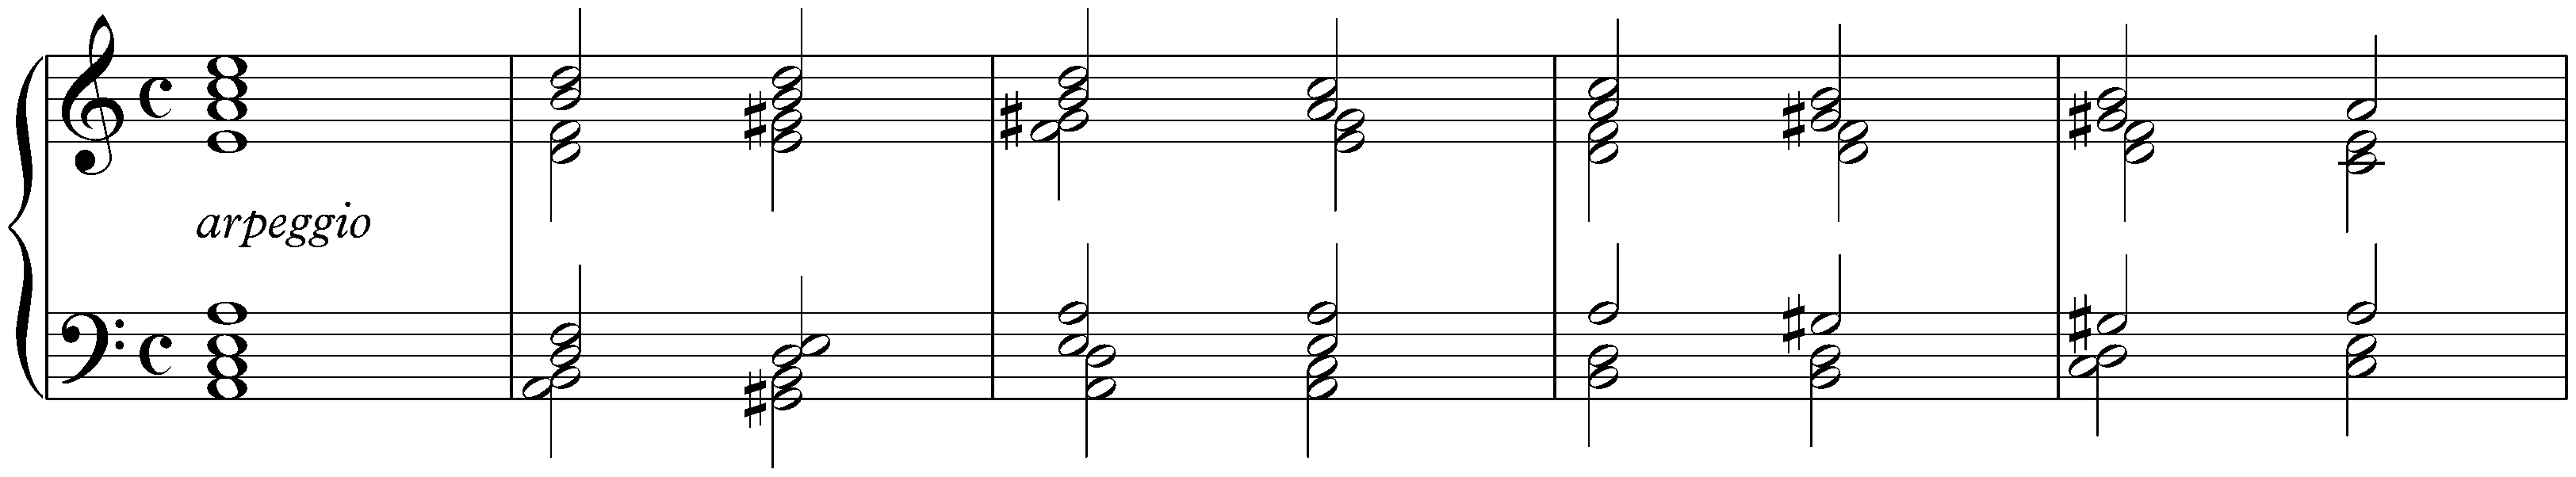 Fantasia and Fugue in A minor, BWV 944; 1. Fantasia